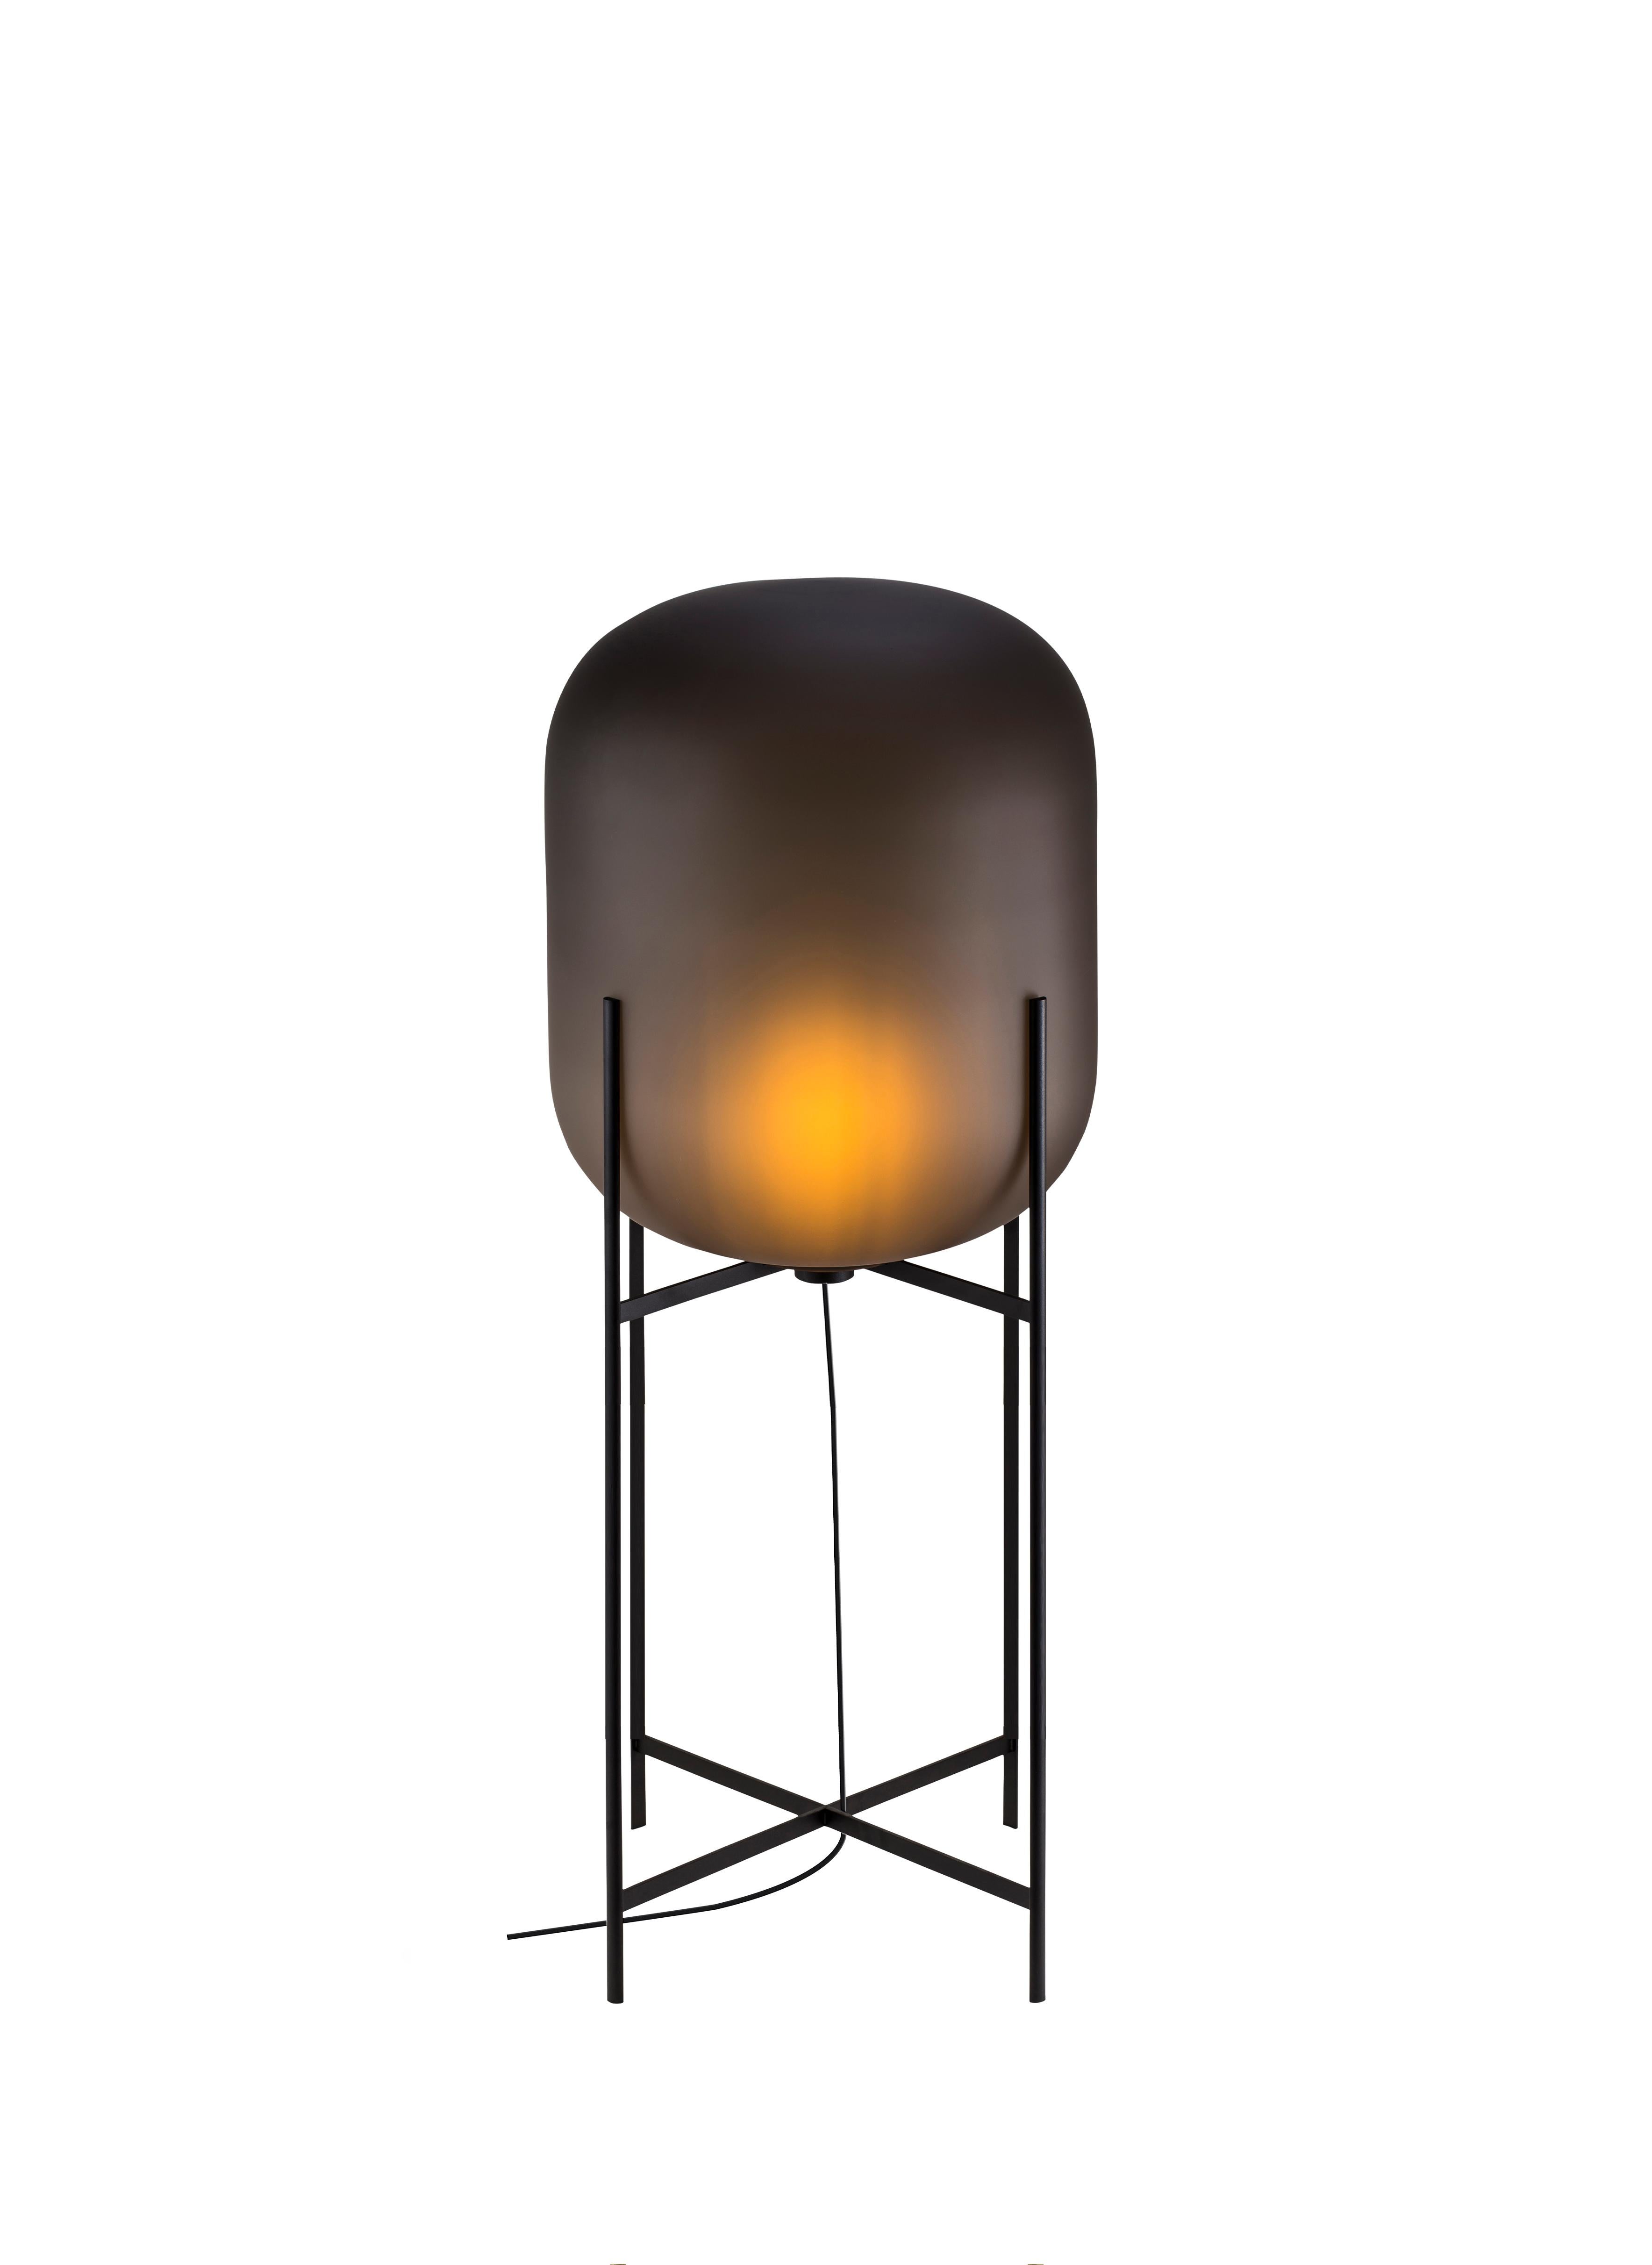 Oda In Between Smoky Grey Acetato Black Floor Lamp by Pulpo
Dimensions : D45 x H111.2 cm
MATERIAL : verre soufflé à la bouche coloré et acier.

Disponible également en différentes finitions. Veuillez nous contacter.

Une base élancée épouse une